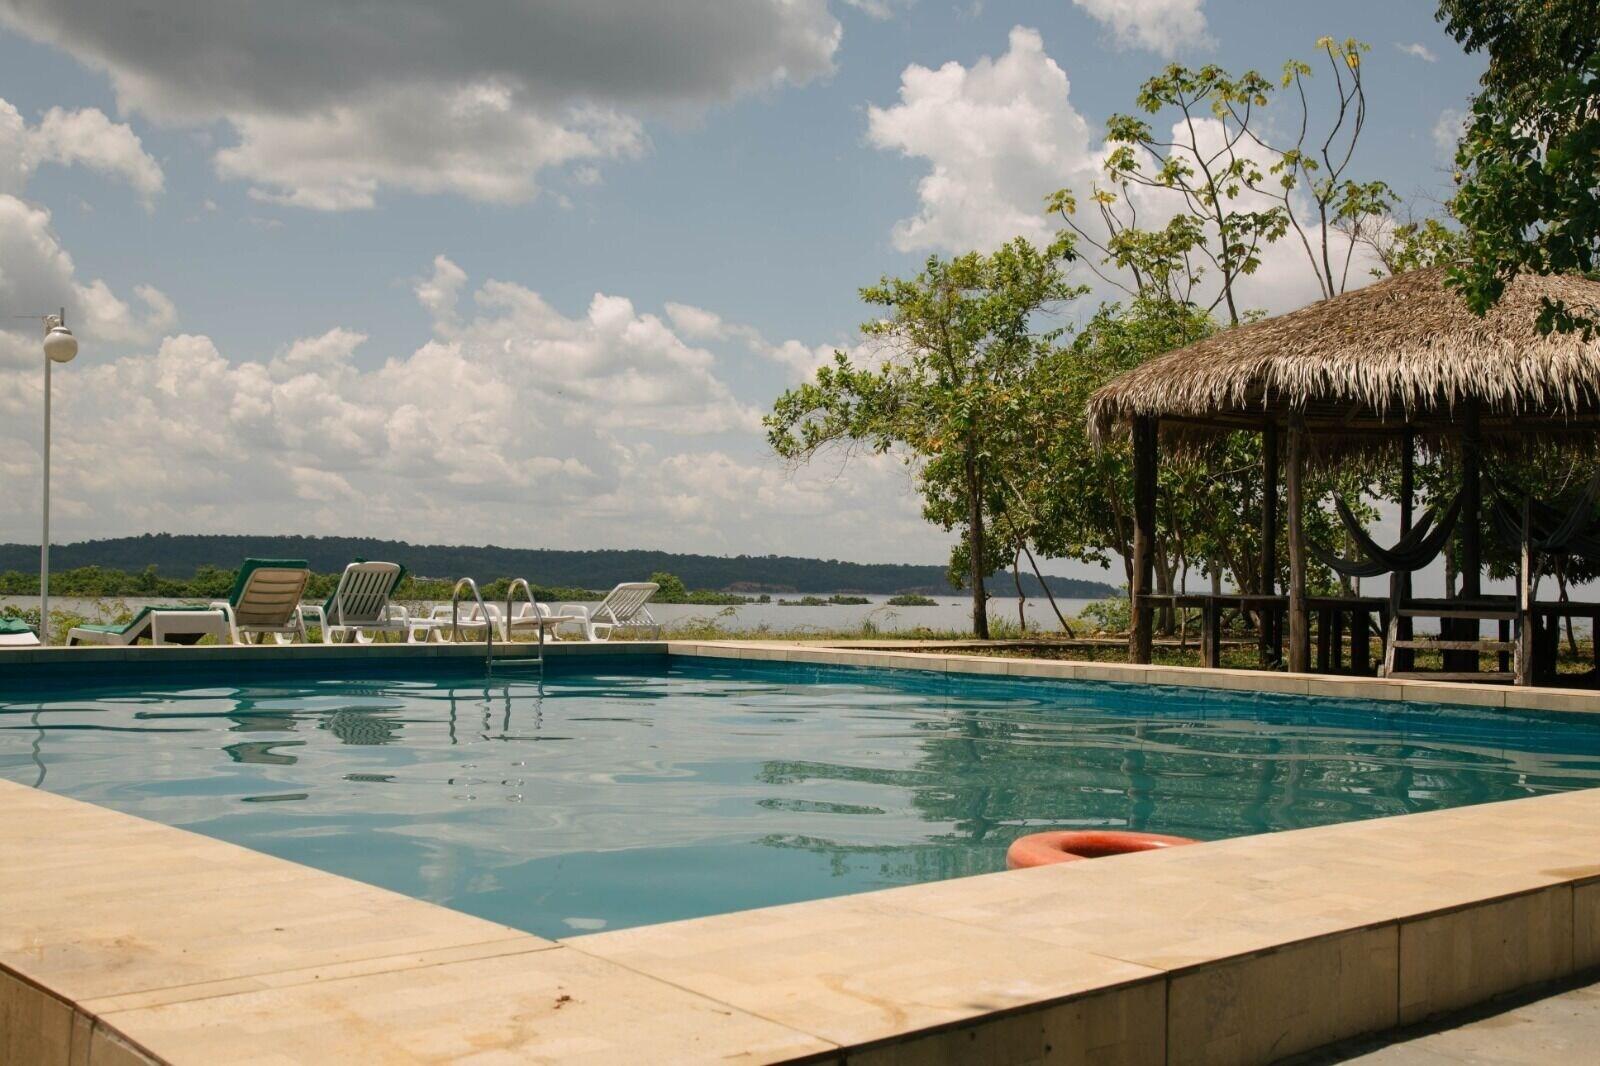 Variados (as) Anaconda Amazon Resort